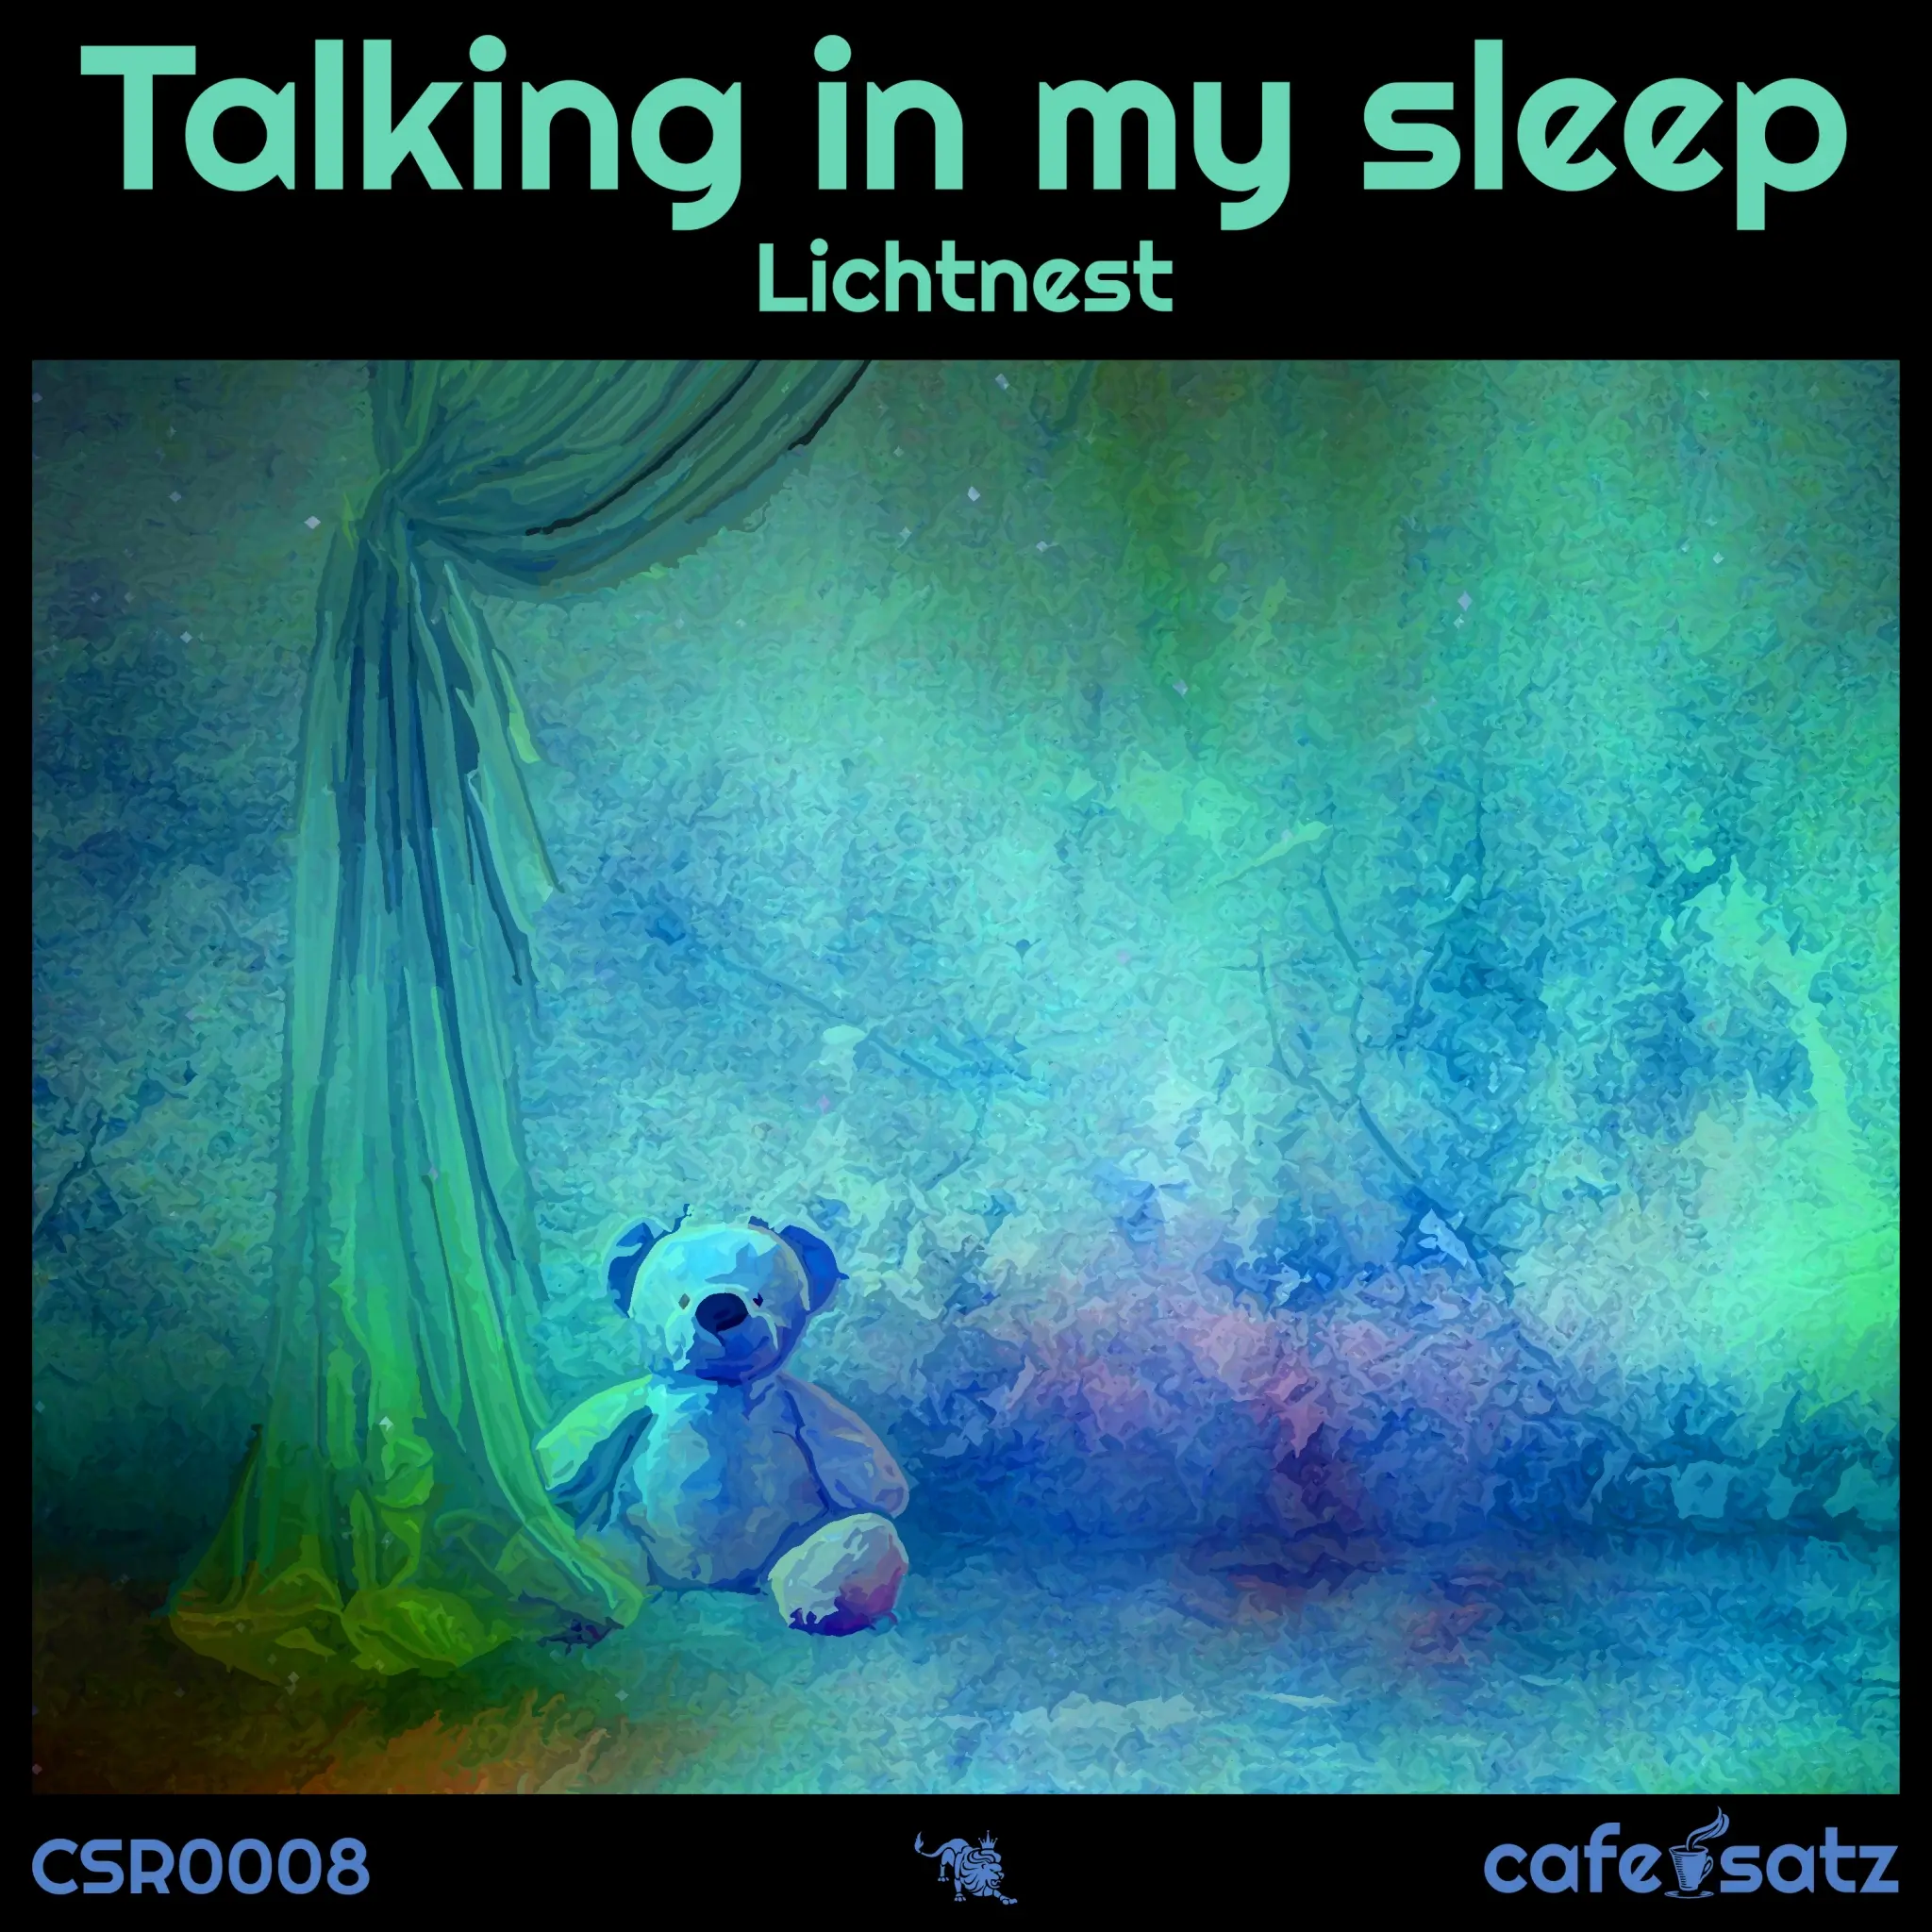 Lichtnest - Talking in My Sleep